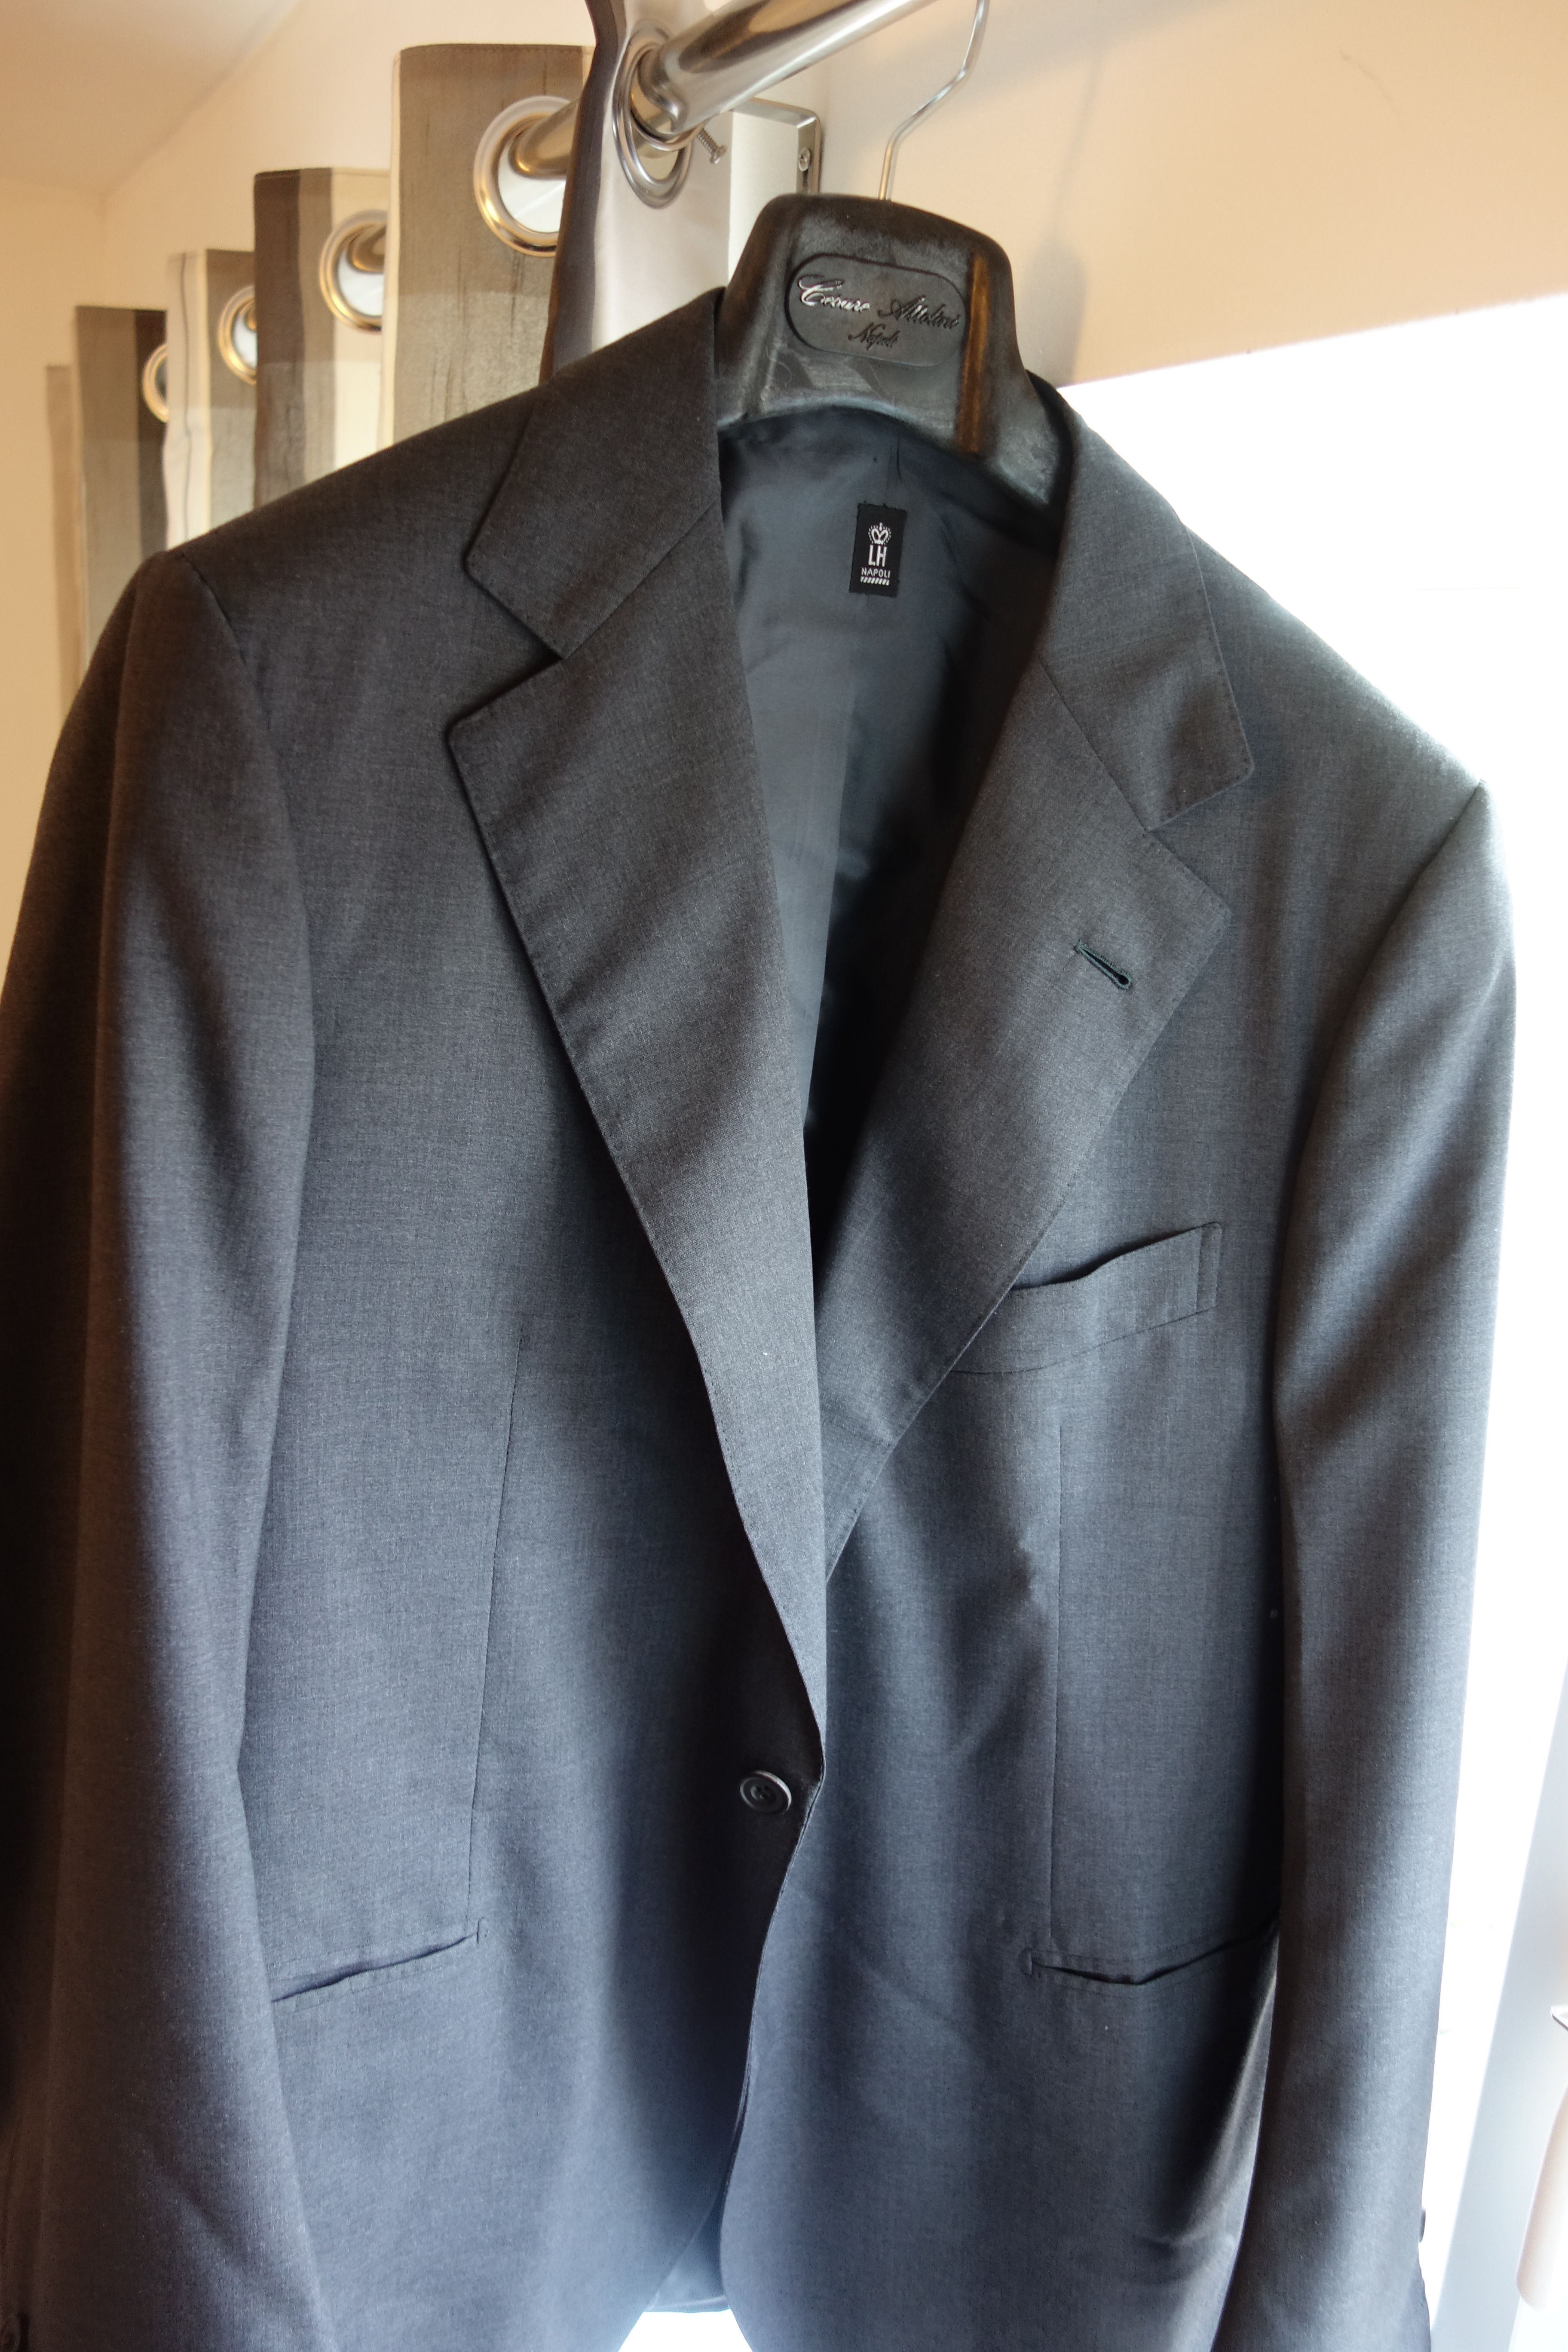 RARE: Staple Rubinacci Grey Suit EU52/50 | Styleforum